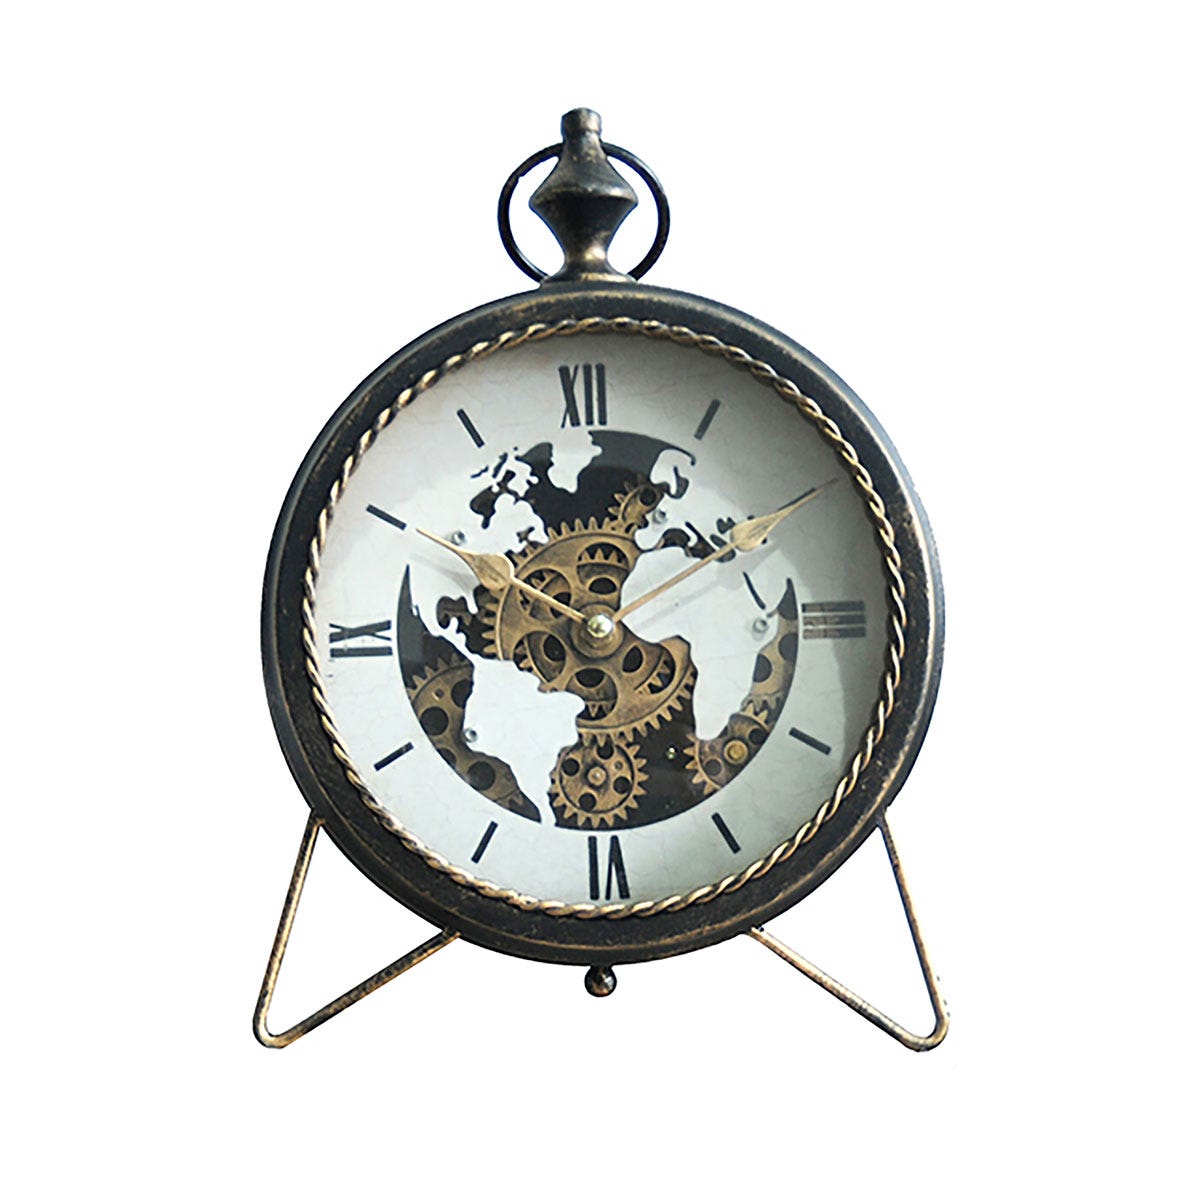 7 ideas de Reloj  decoración de unas, relojes de pared, relojes